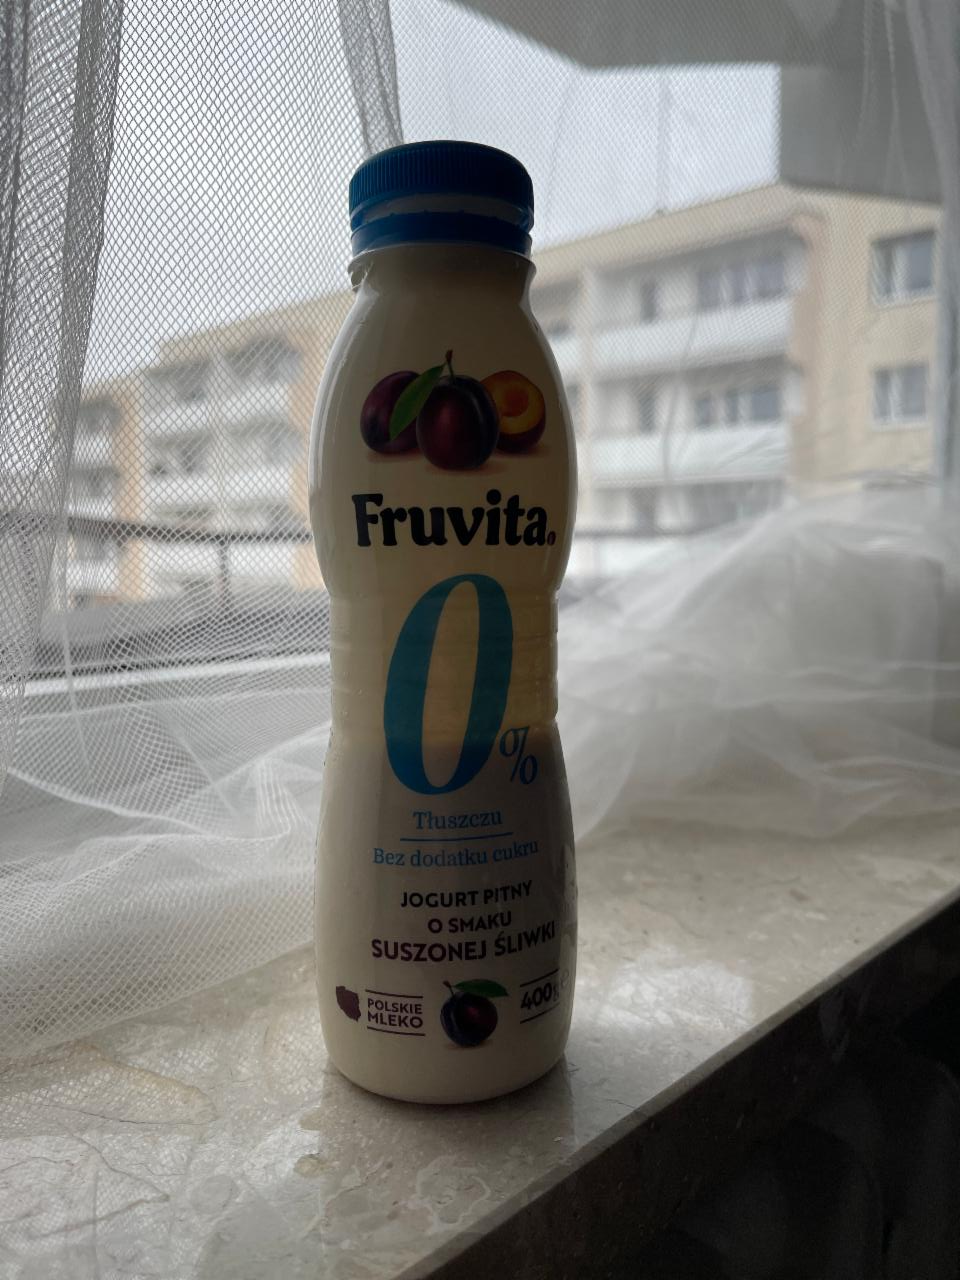 Фото - йогурт питьевой 0% со вкусом сезонной сливы Fruvita